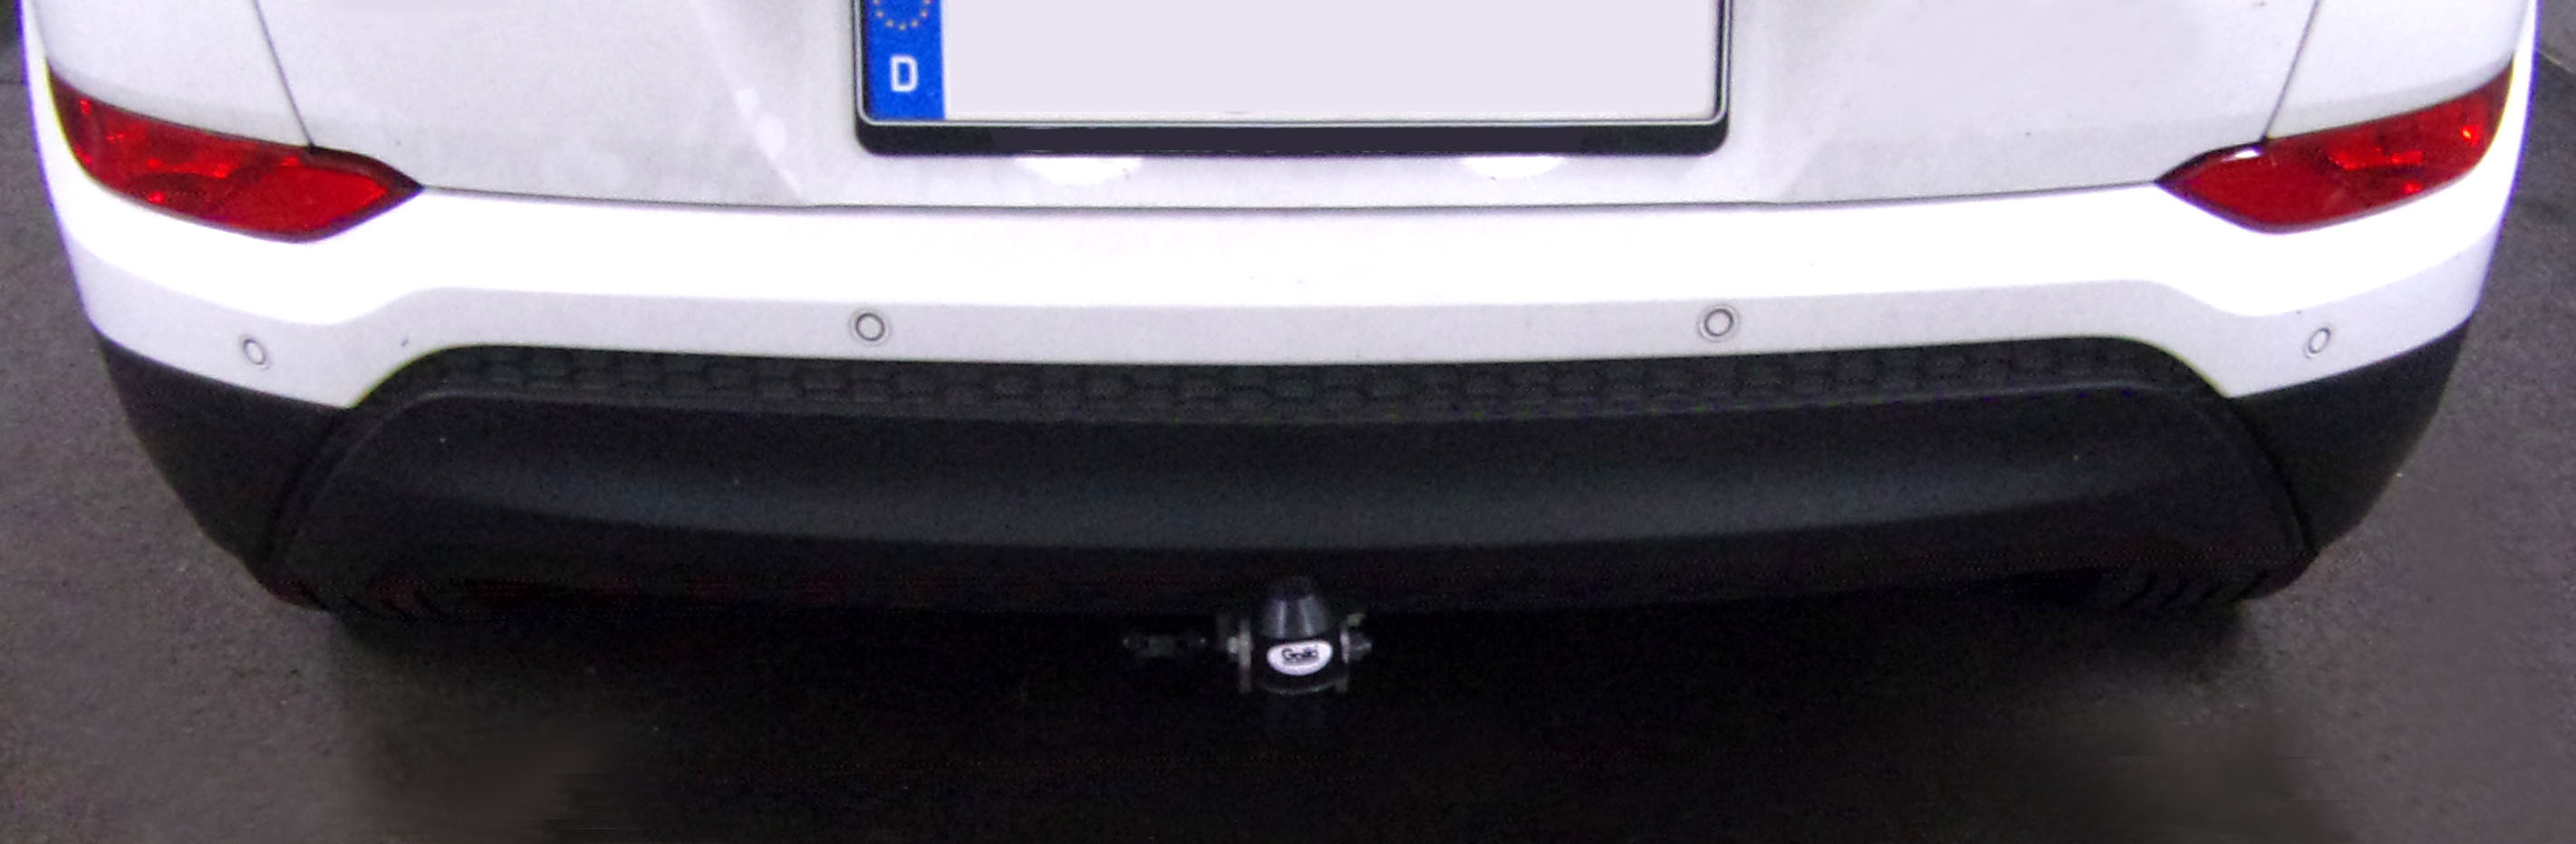 Anhängerkupplung für Hyundai-Tucson, Baureihe 2015-2018 starr